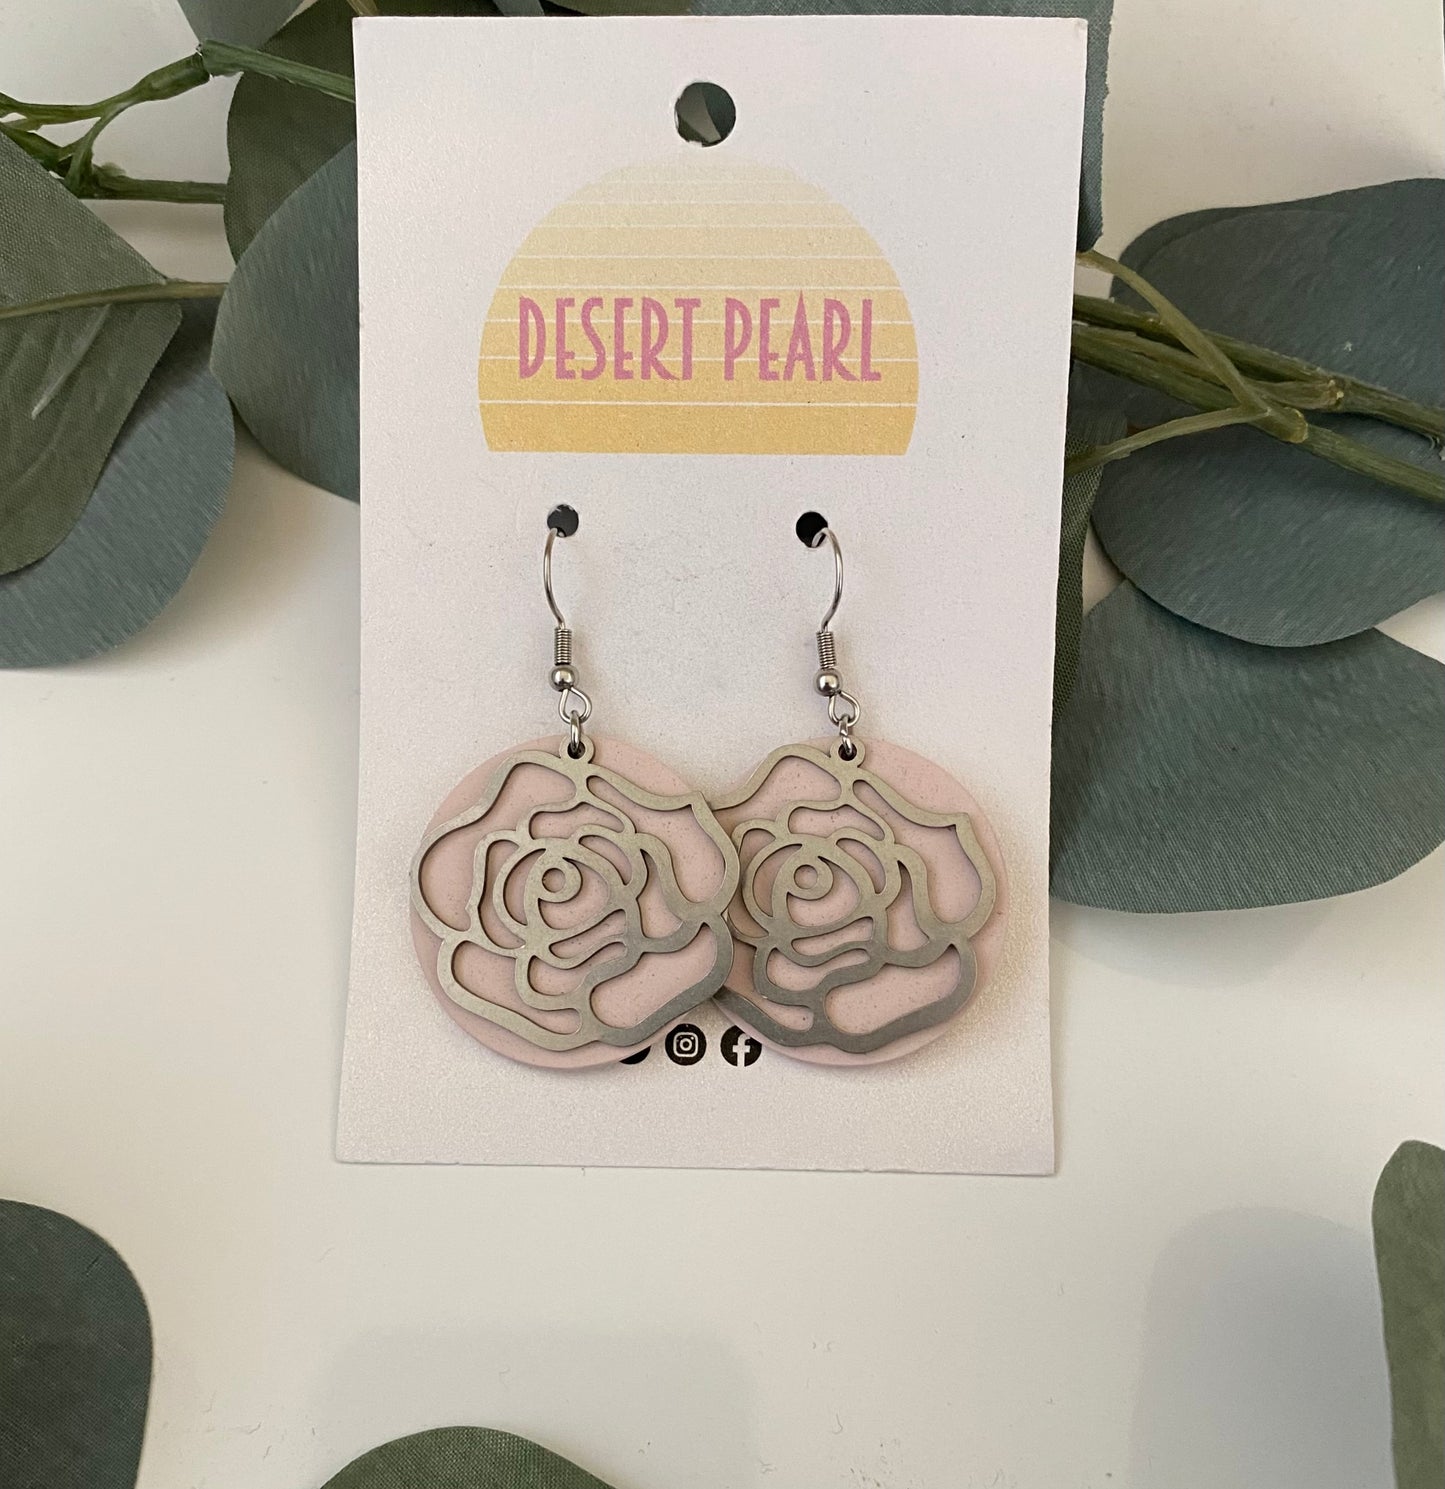 Silver rose earrings